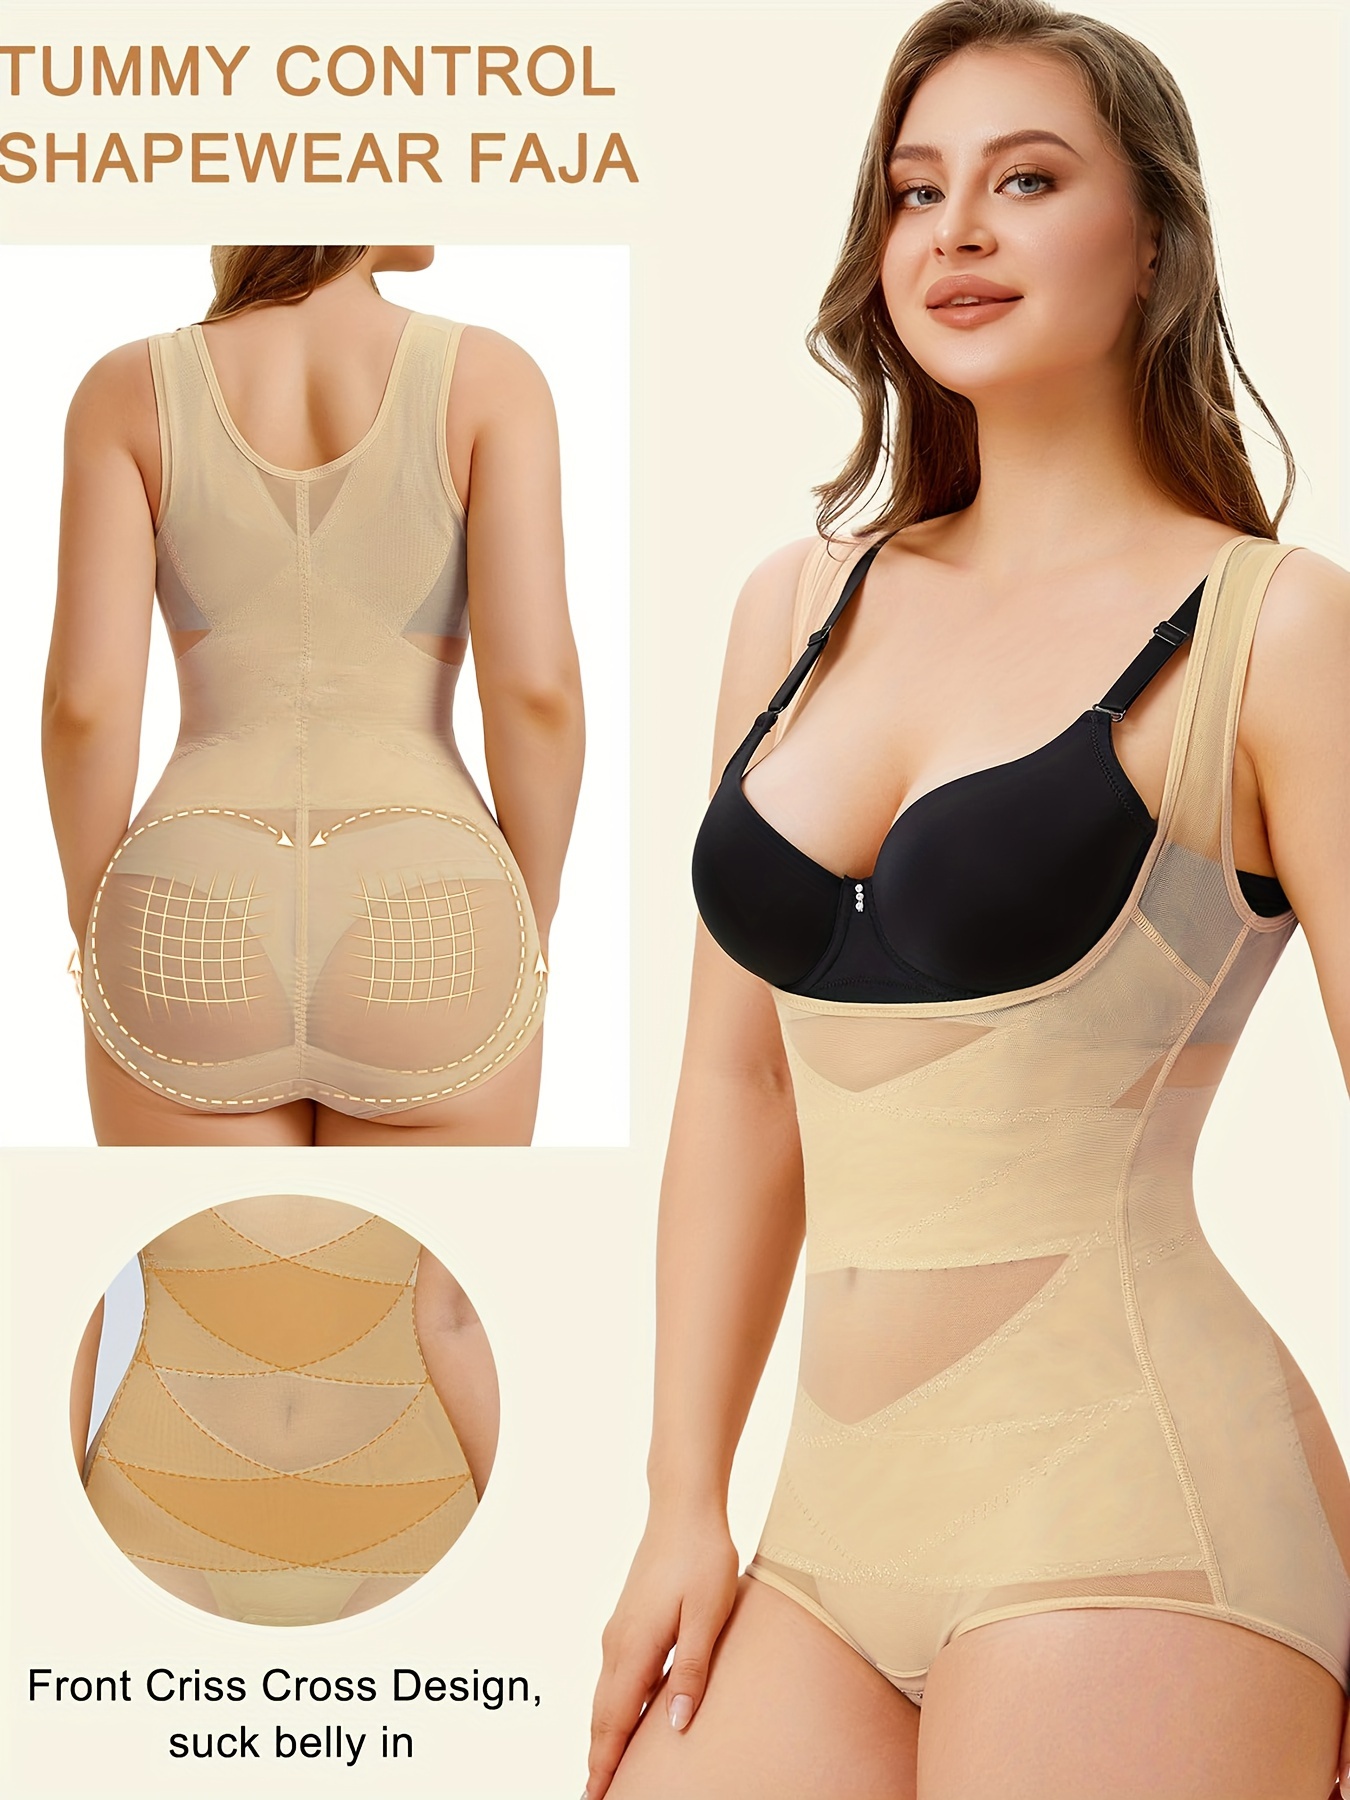 Open-bust style sleeveless full body shaper underwear for women